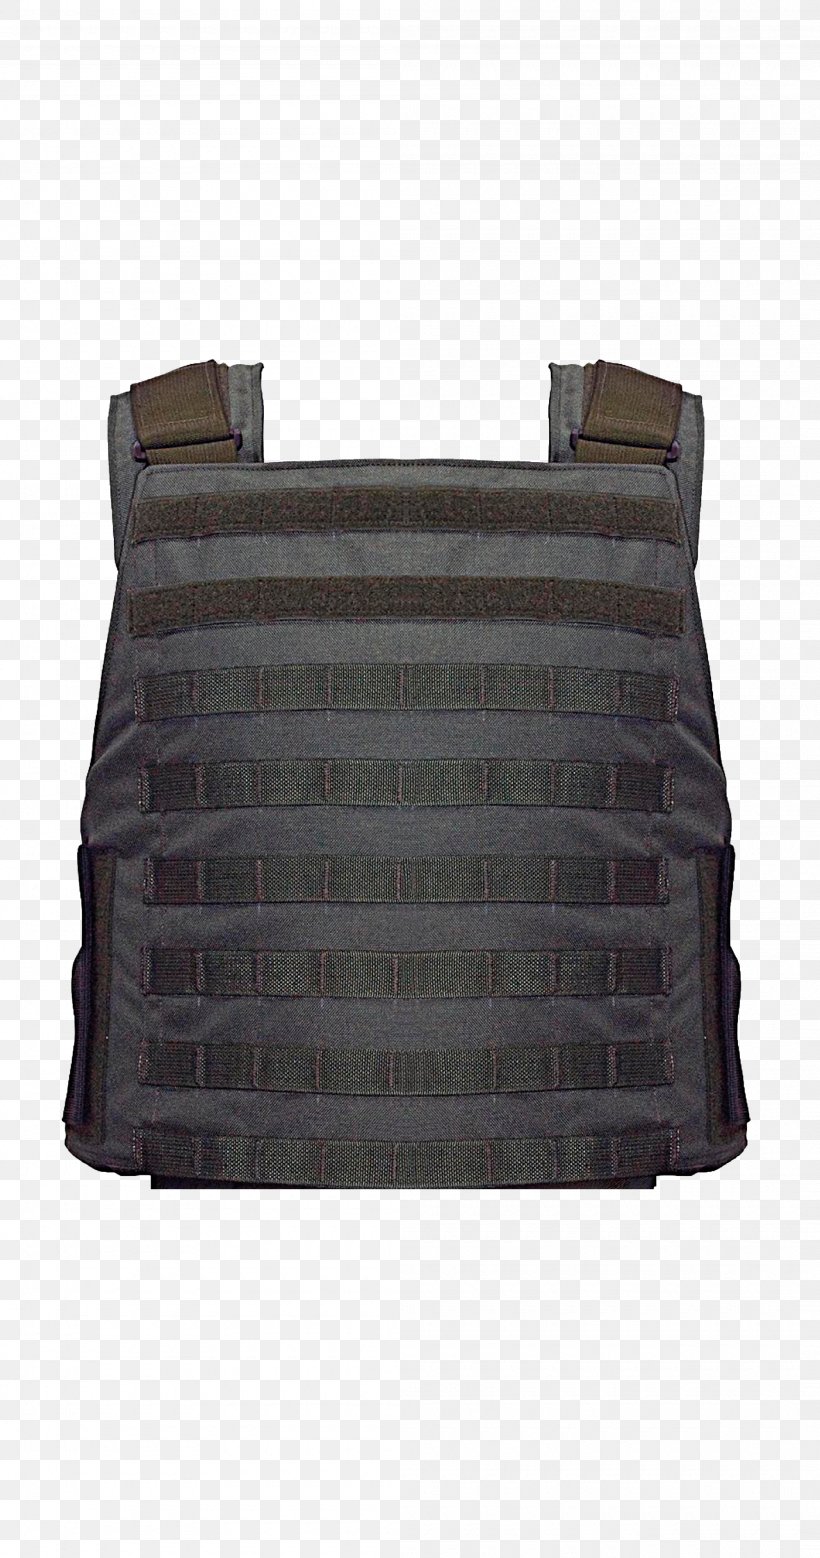 Handbag Messenger Bags Leather Bullet Proof Vests, PNG, 2100x3992px, Handbag, Bag, Bullet Proof Vests, Courier, Gilets Download Free